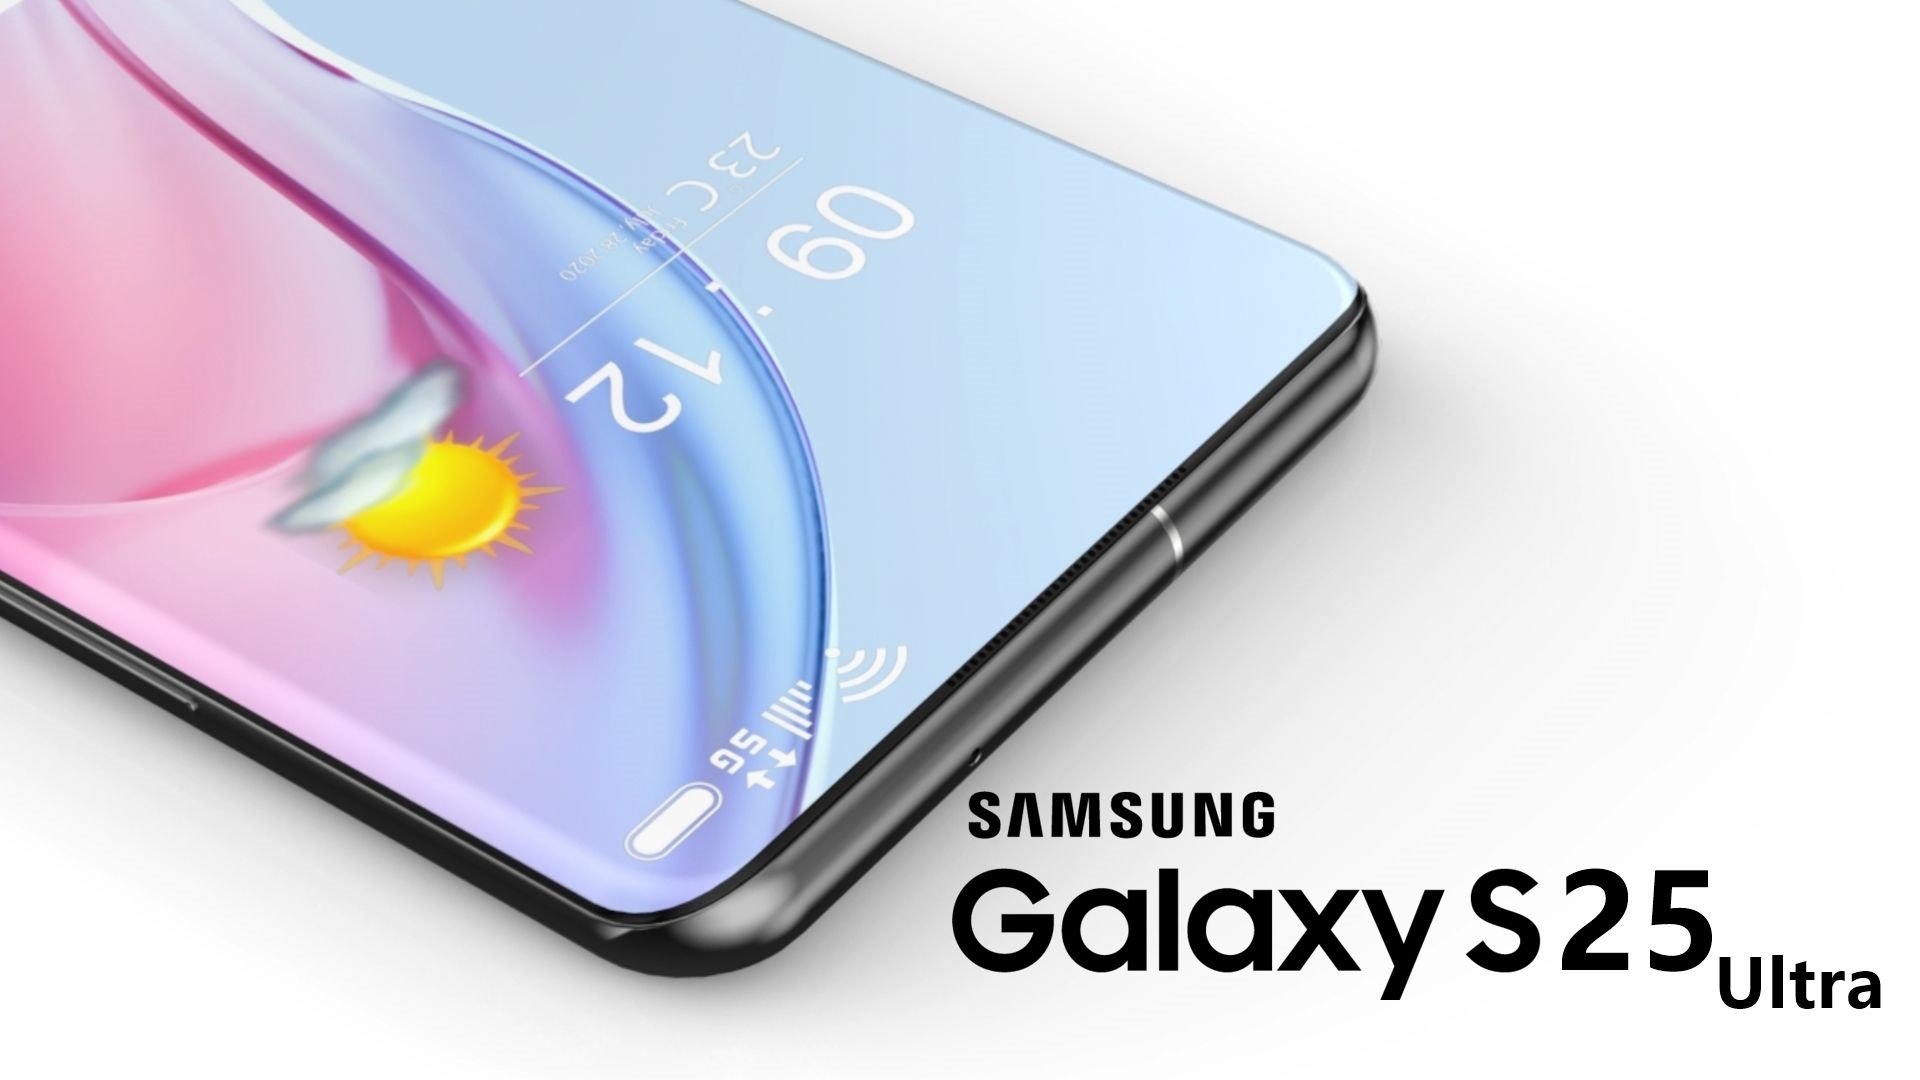 Samsung GALAXY S25 kündigte beeindruckende Änderungen an, die Samsung-Fans überraschen